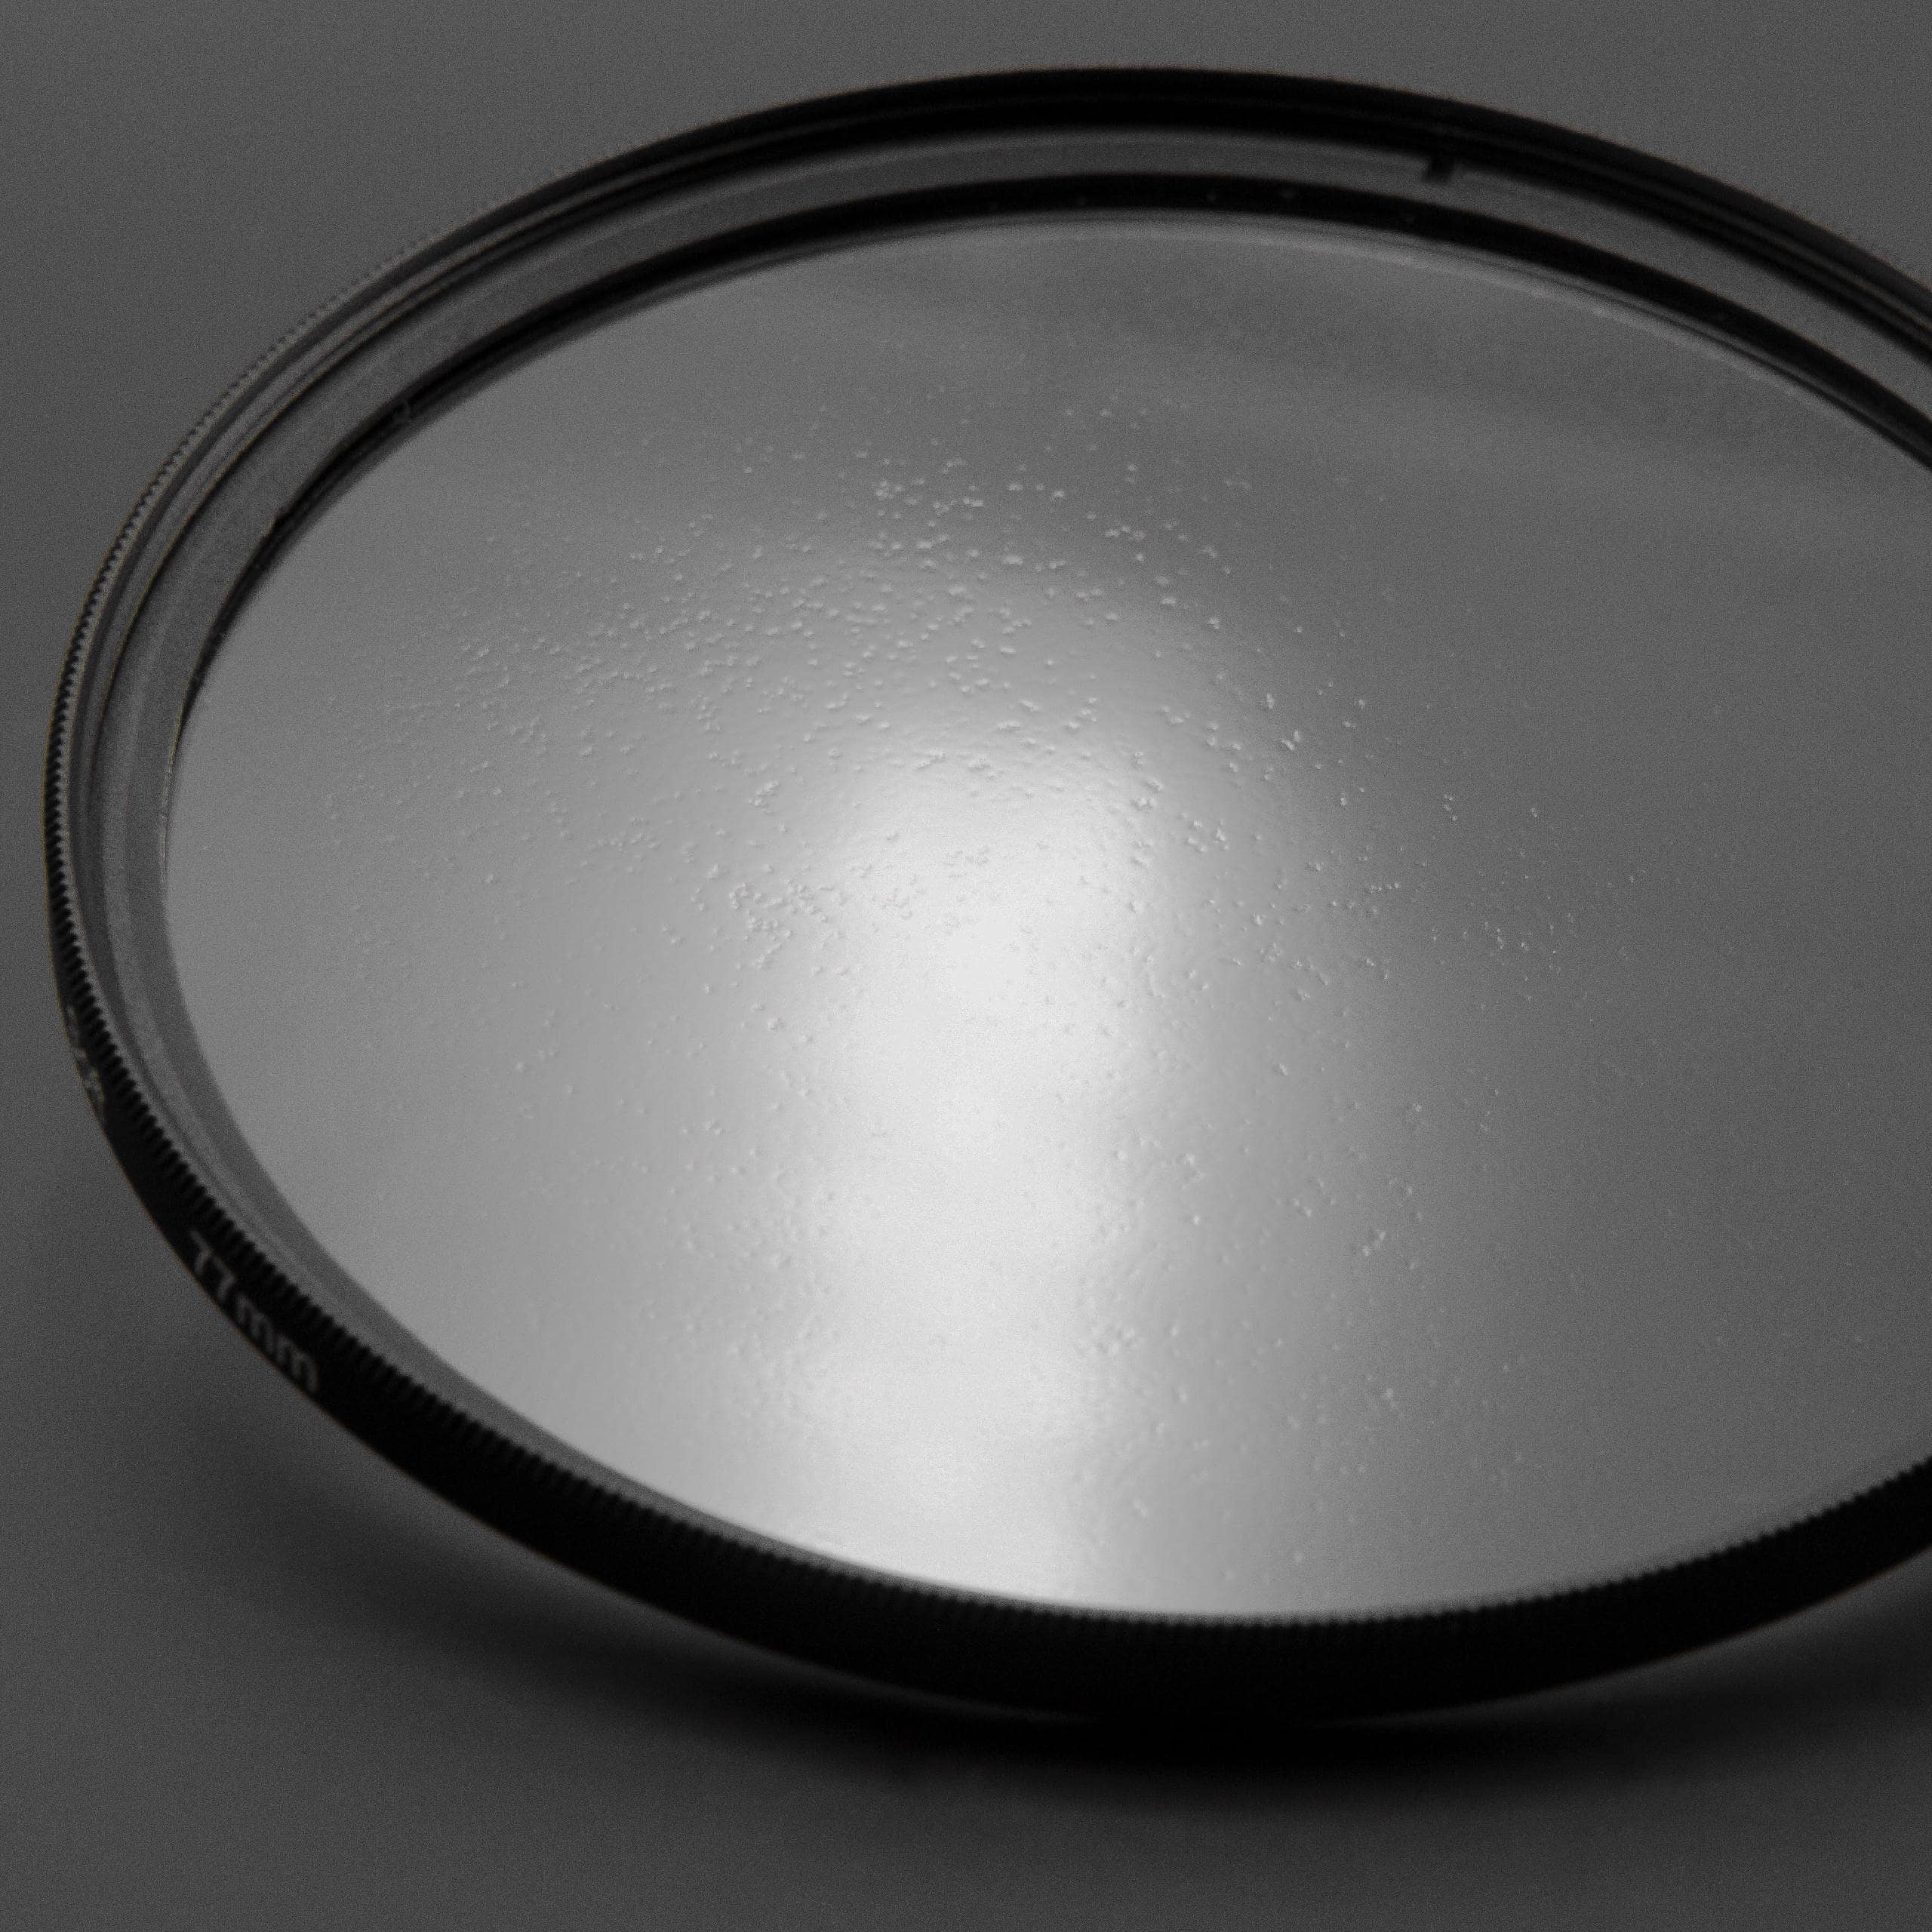 Filtr dyfuzyjny 58mm na obiektyw do różnych aparatów - filtr soft focus